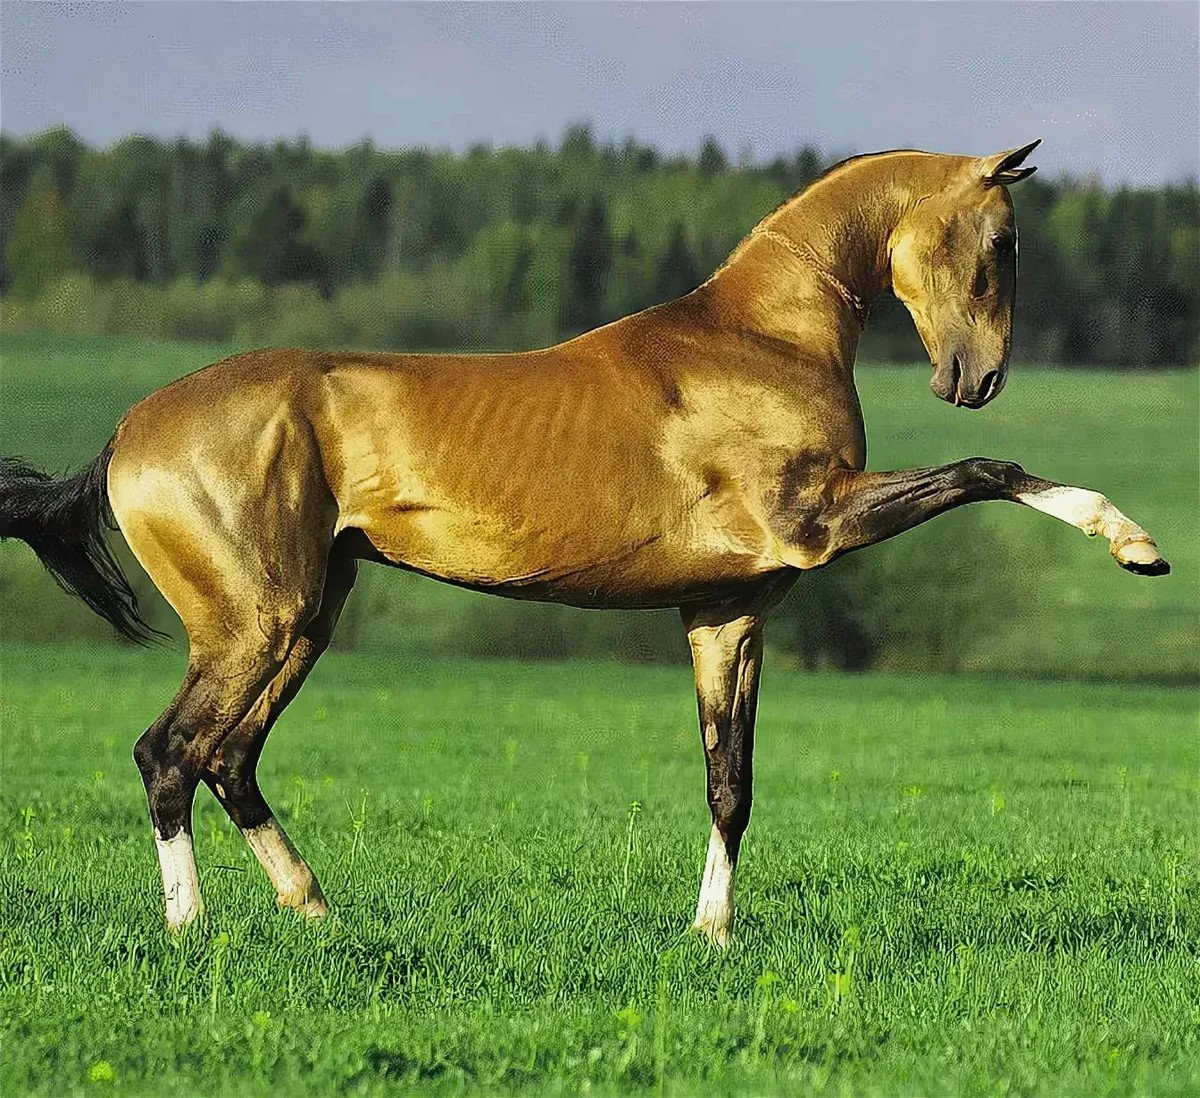 фотографии самых известных пород лошадей